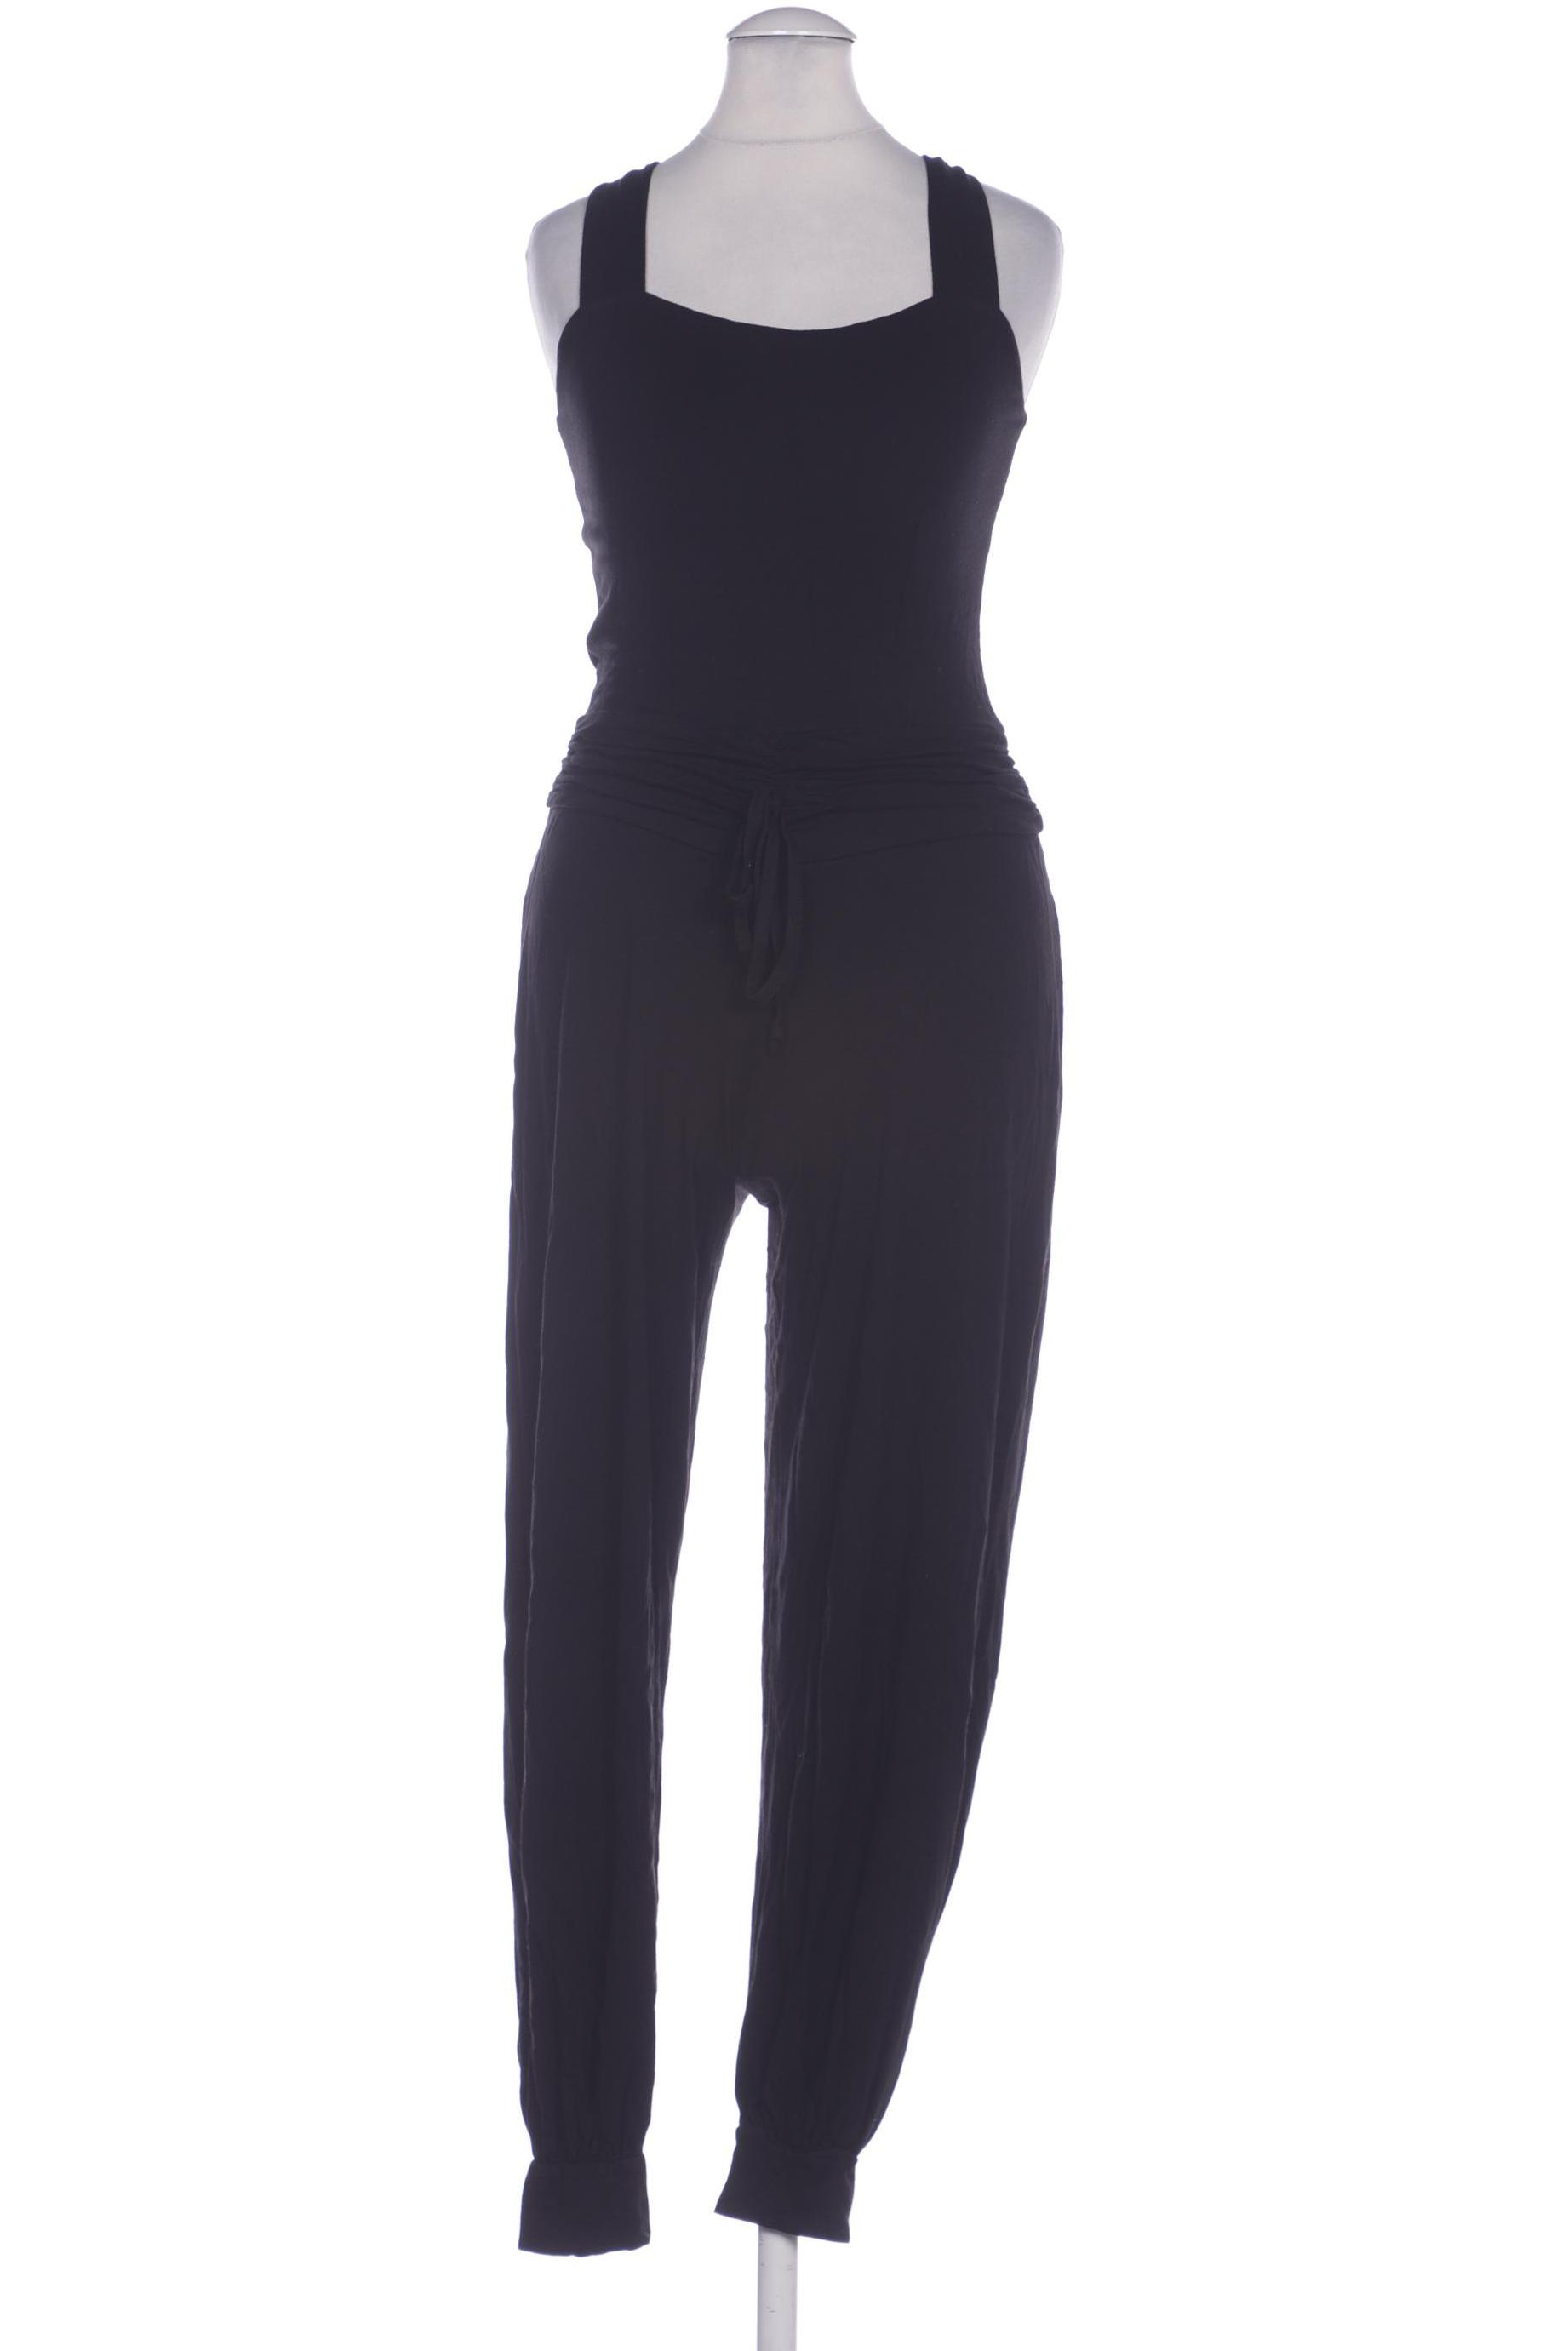 Heine Damen Jumpsuit/Overall, schwarz, Gr. 34 von heine